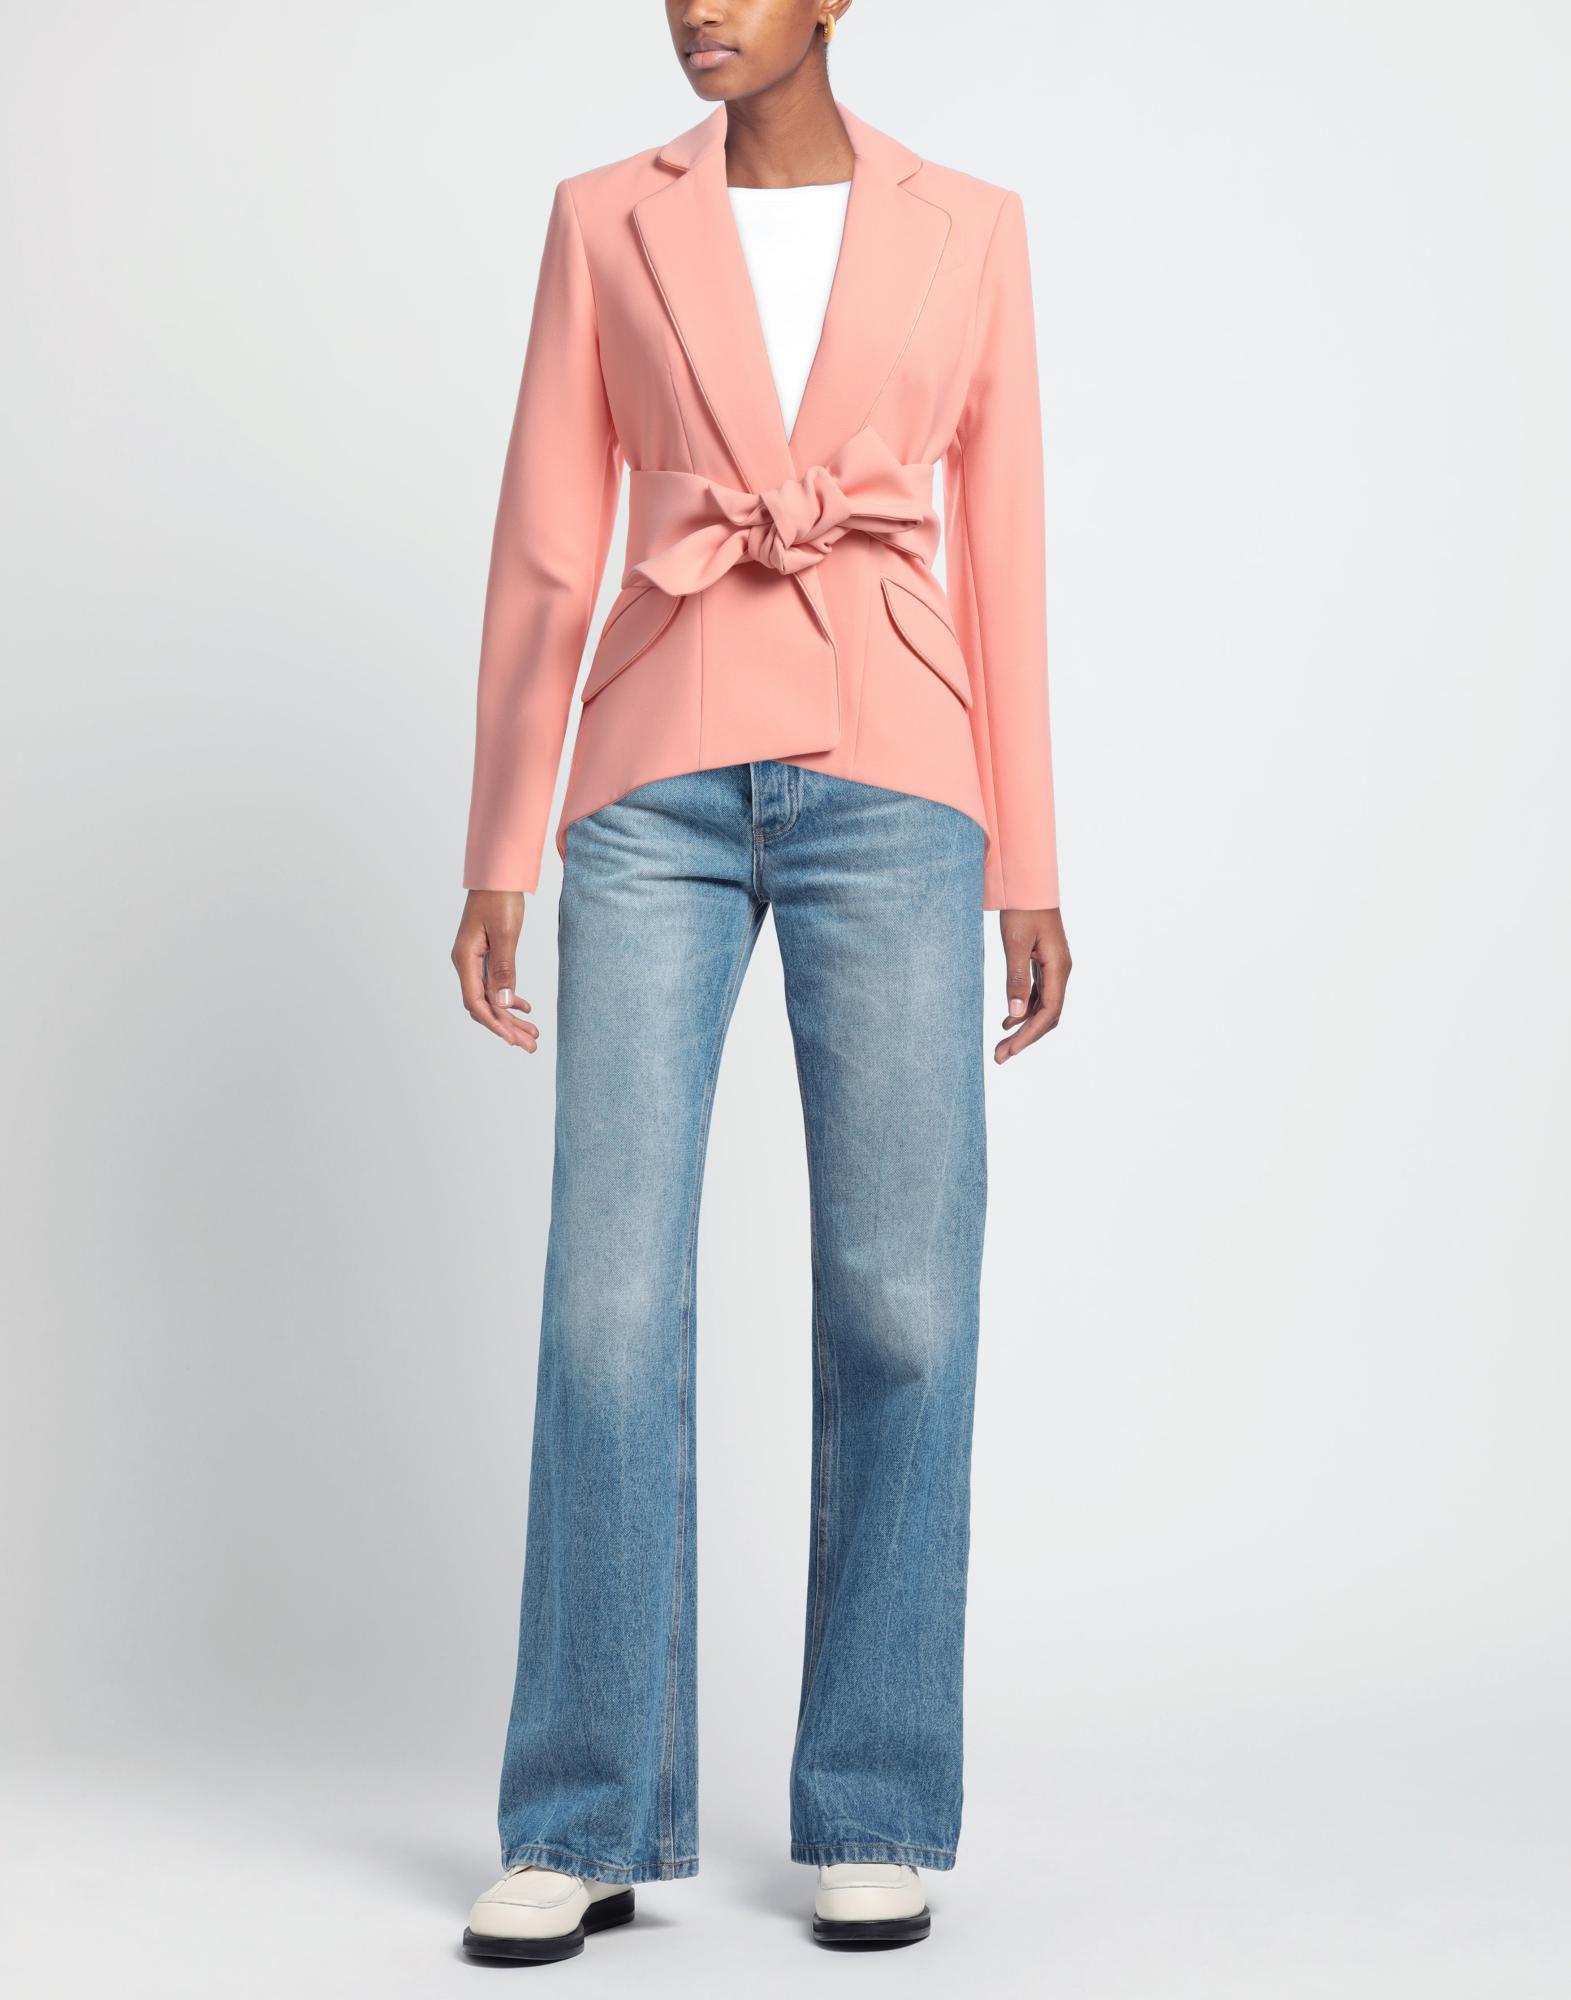 Hebe Studio Suit Jacket in Pink | Lyst